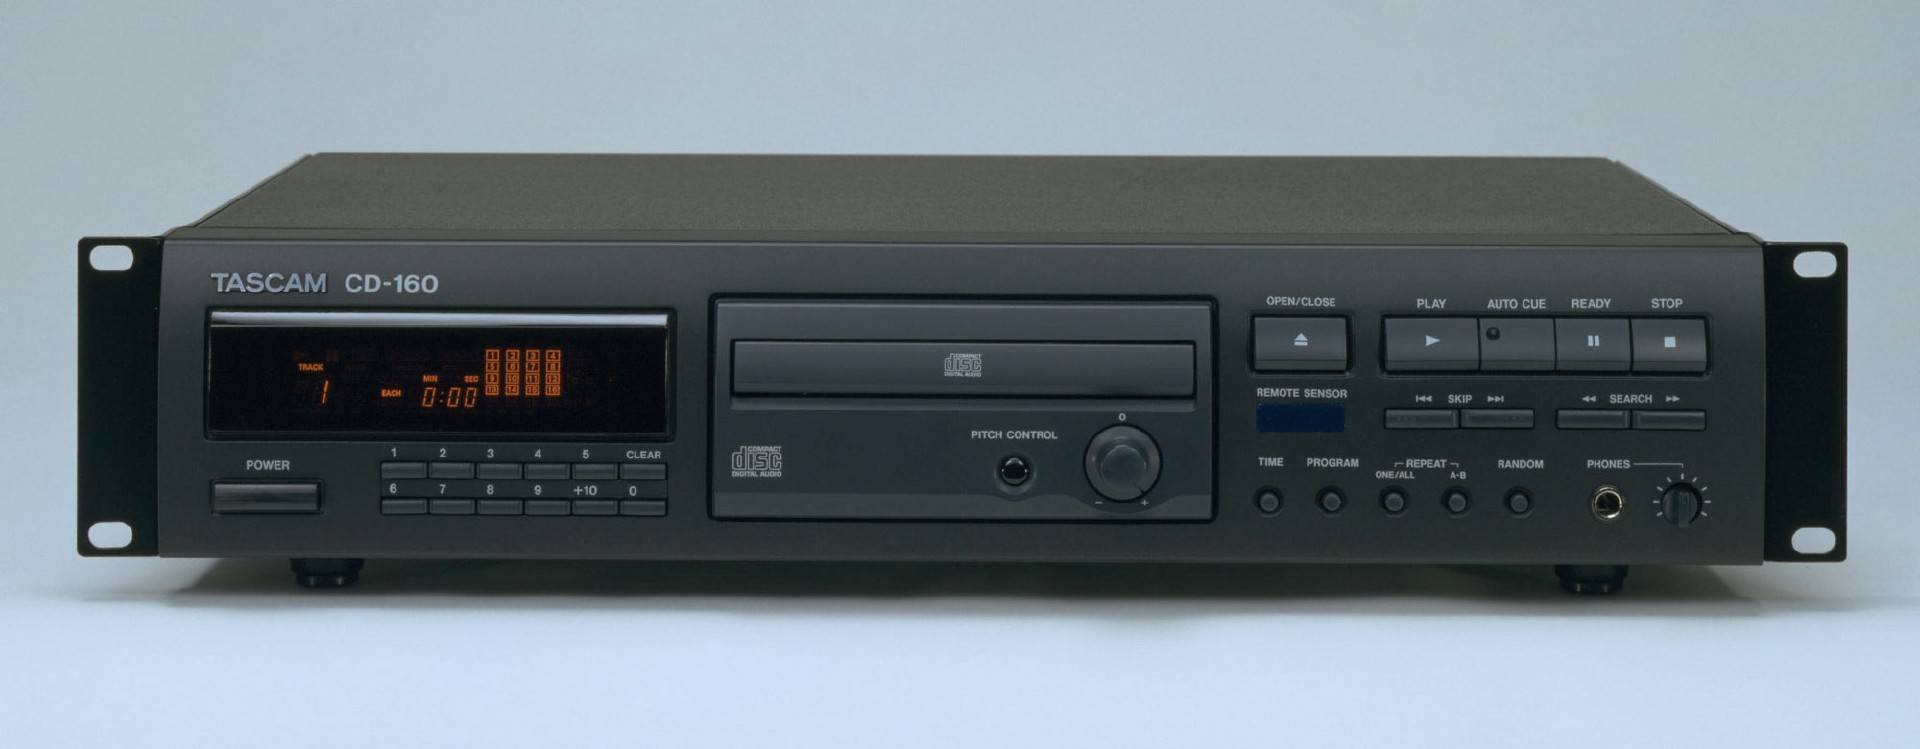 Tascam CD-160